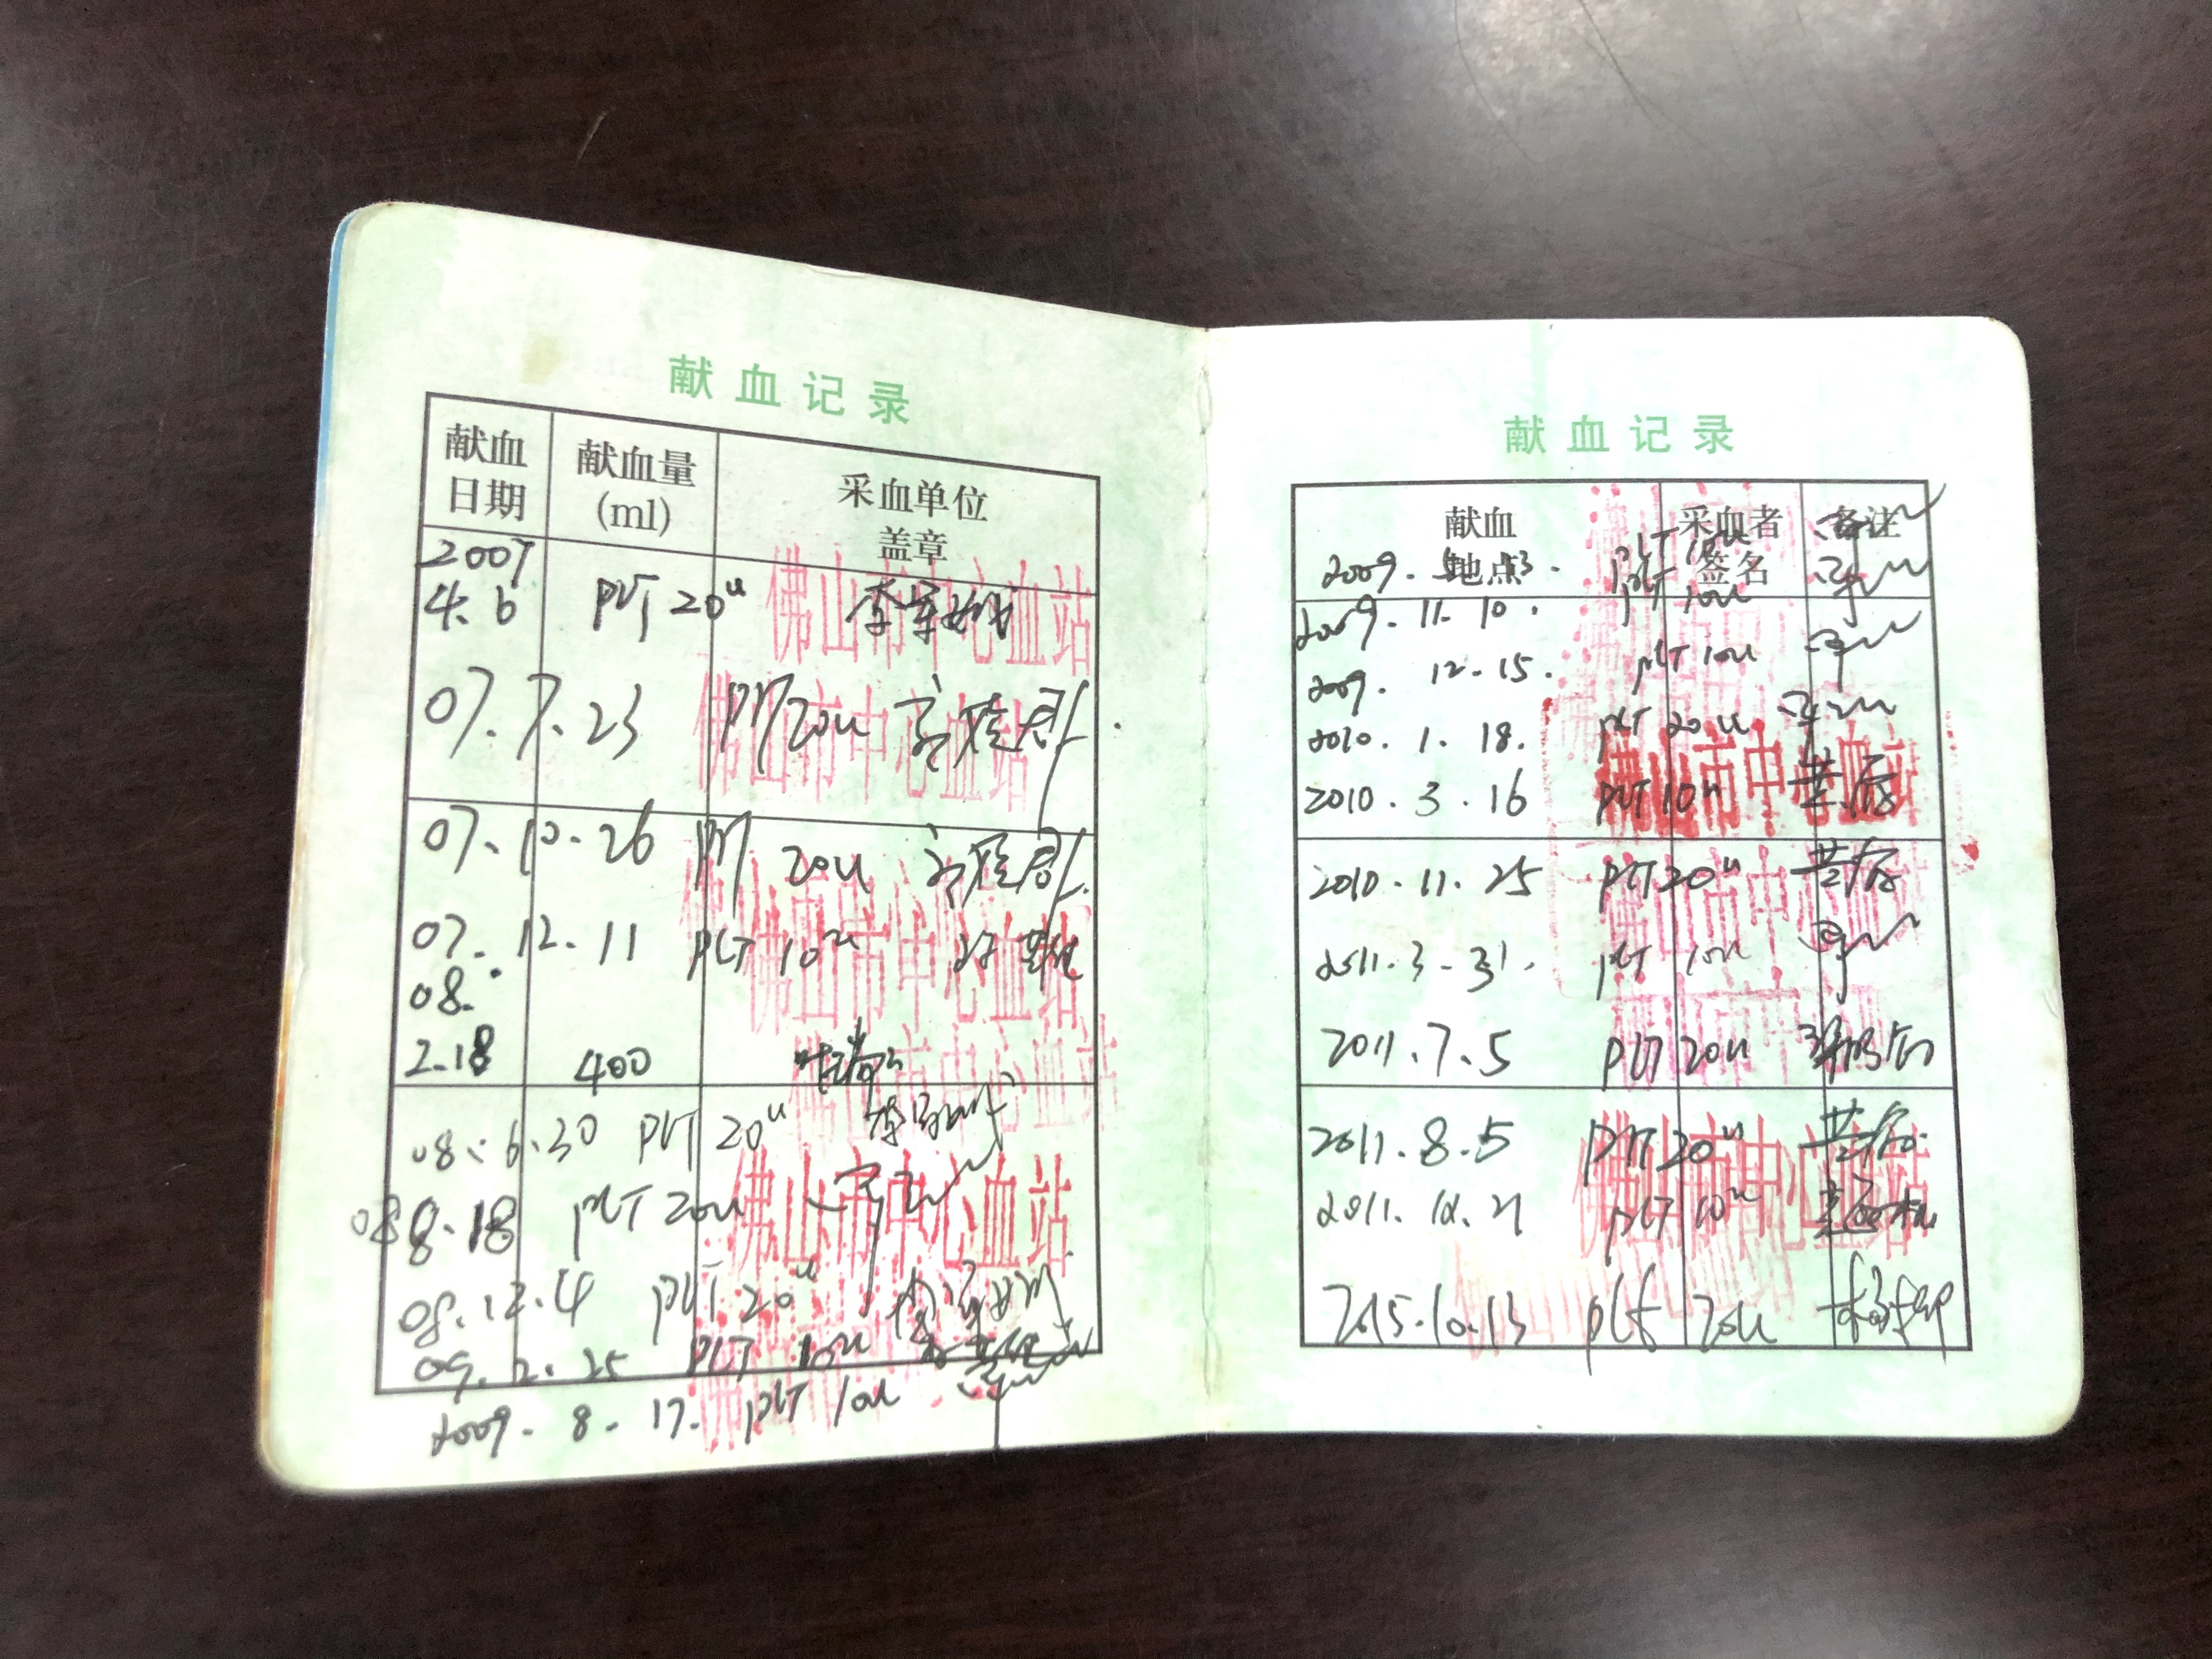 冯美霞找出了07年开始记录的献血证，一笔笔的献血记录也代表着冯美霞的“爱心力量”。佛山日报记者陈嘉懿摄.jpg